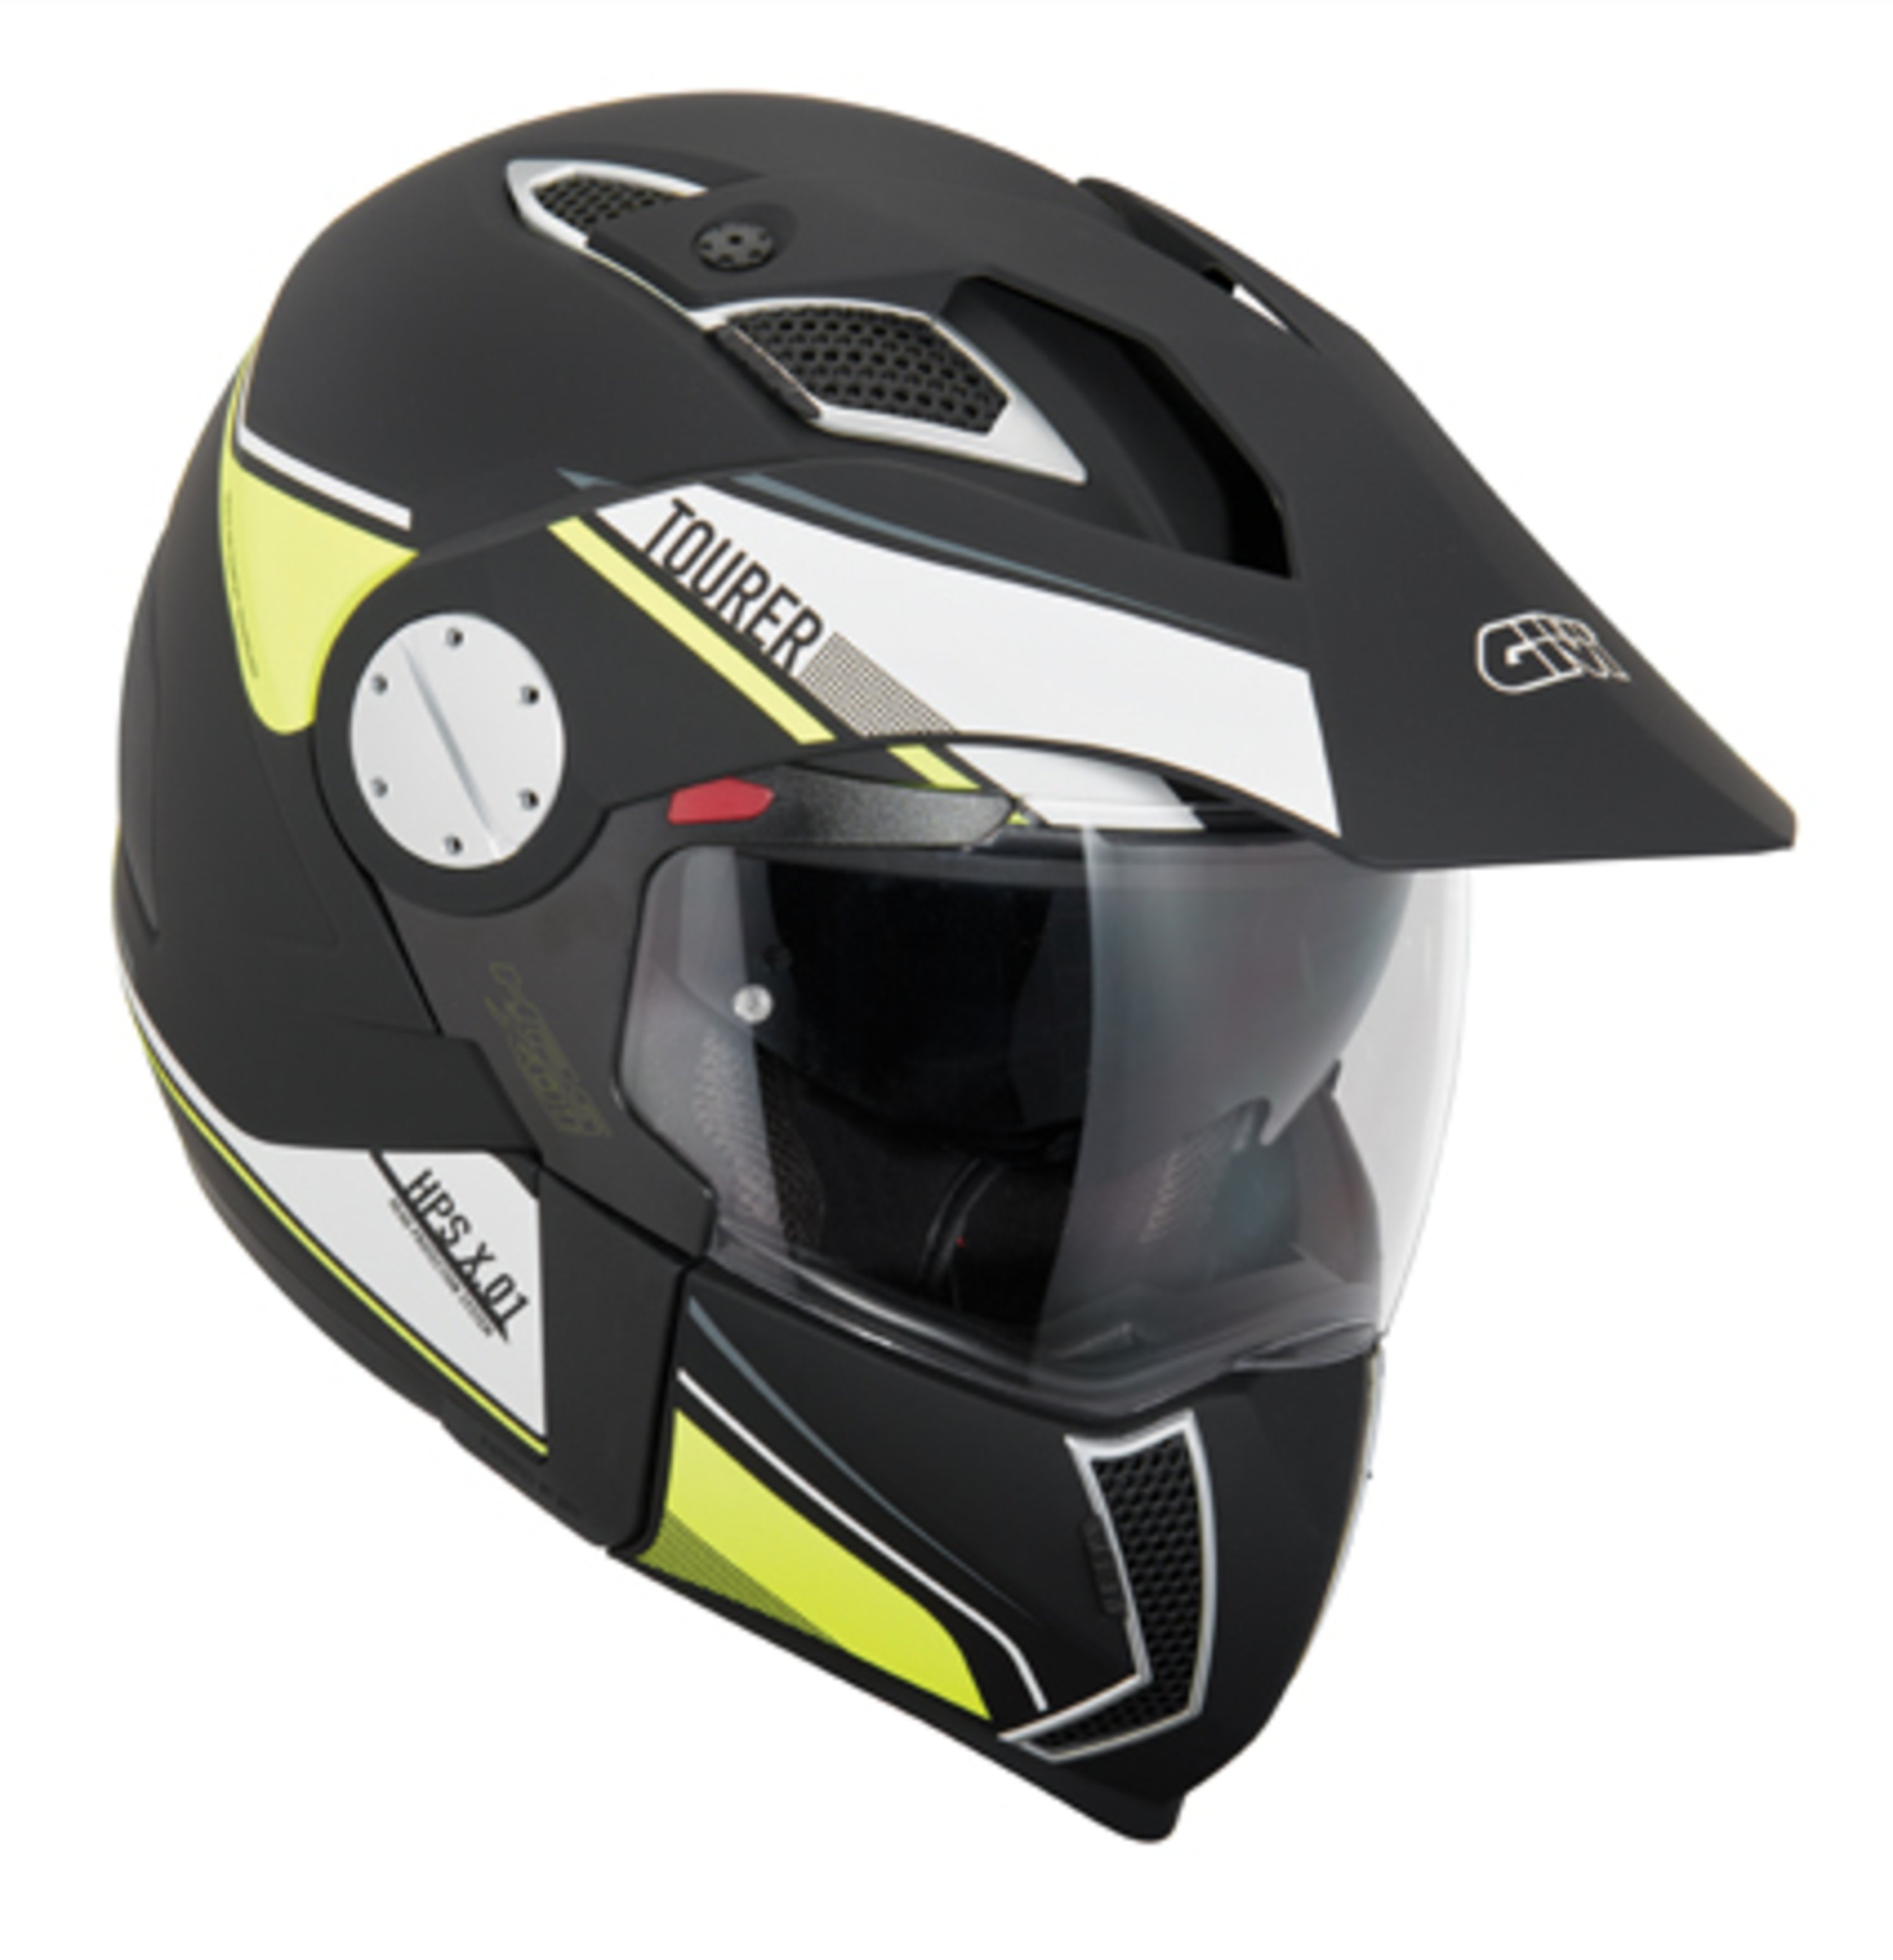 GIVI: due nuove colorazioni per il casco X.01 Tourer